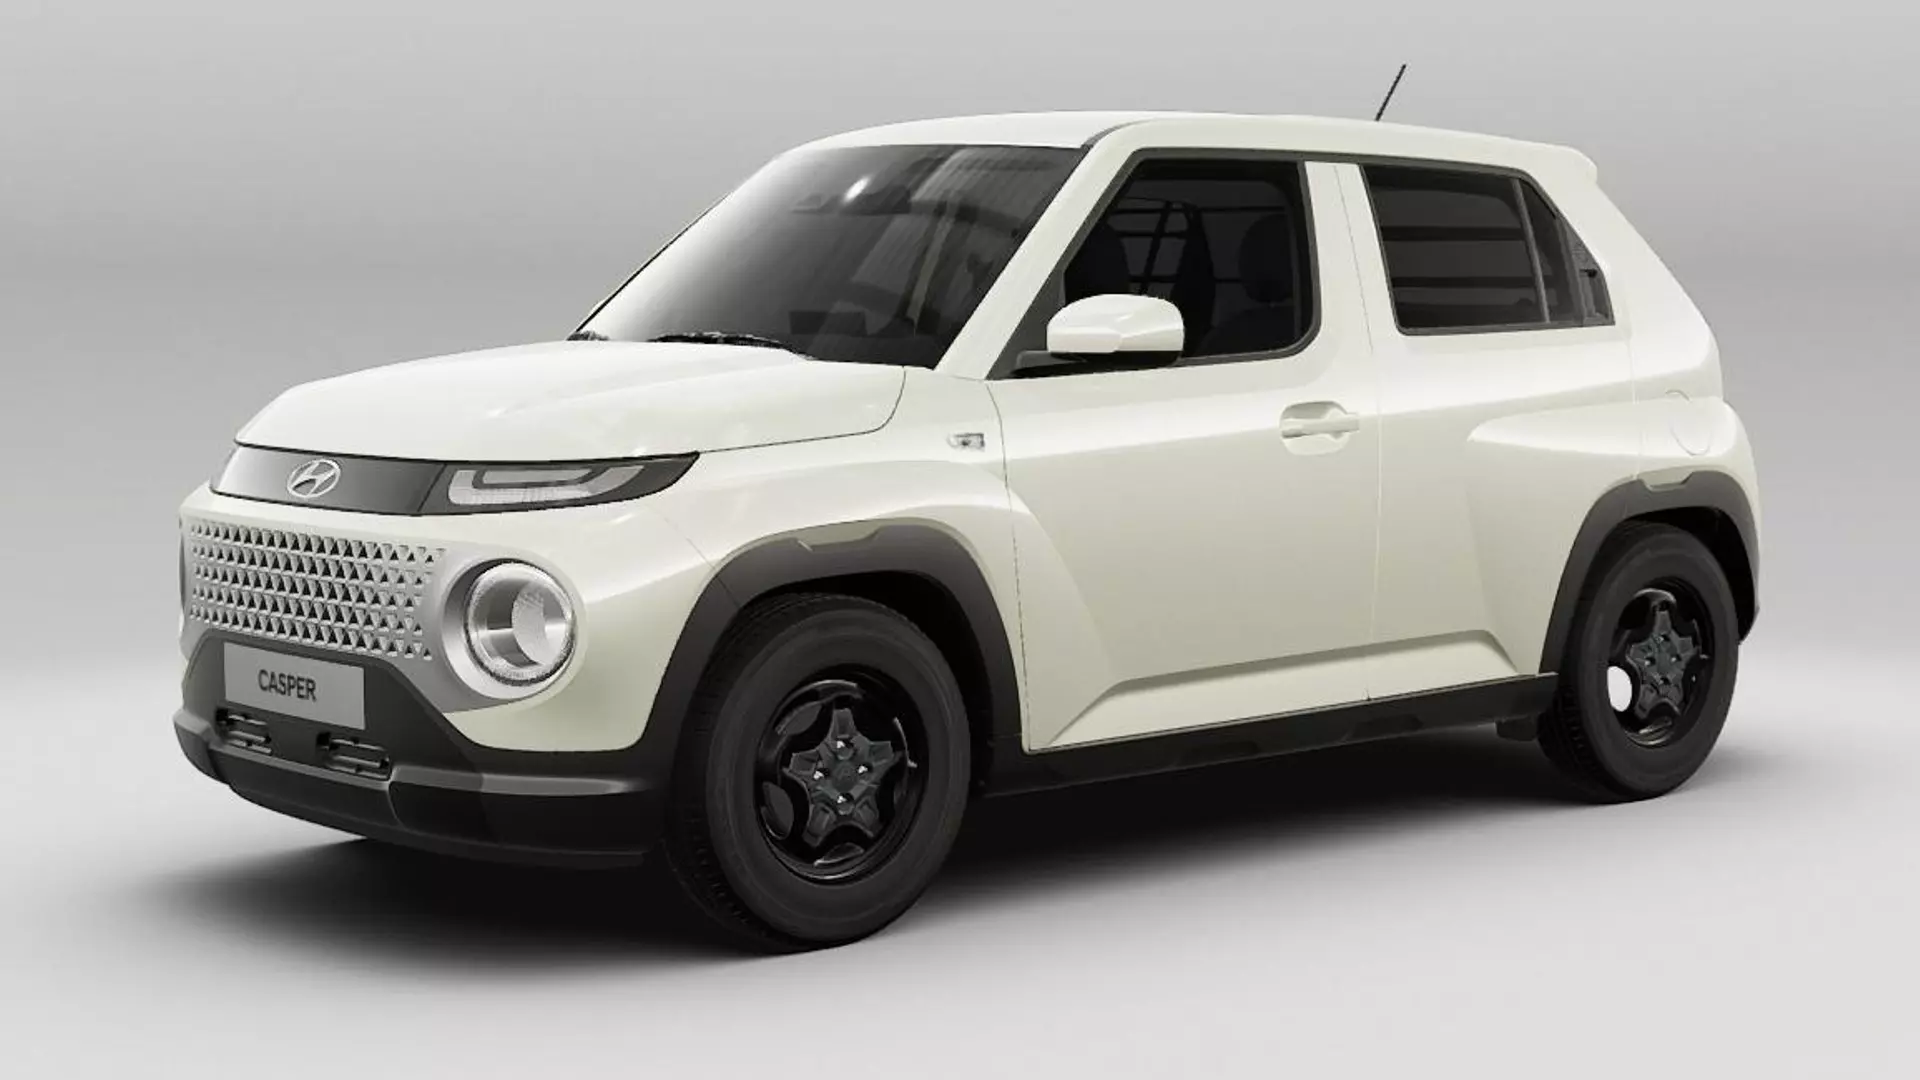 2022 Hyundai Casper Price and Features Announced